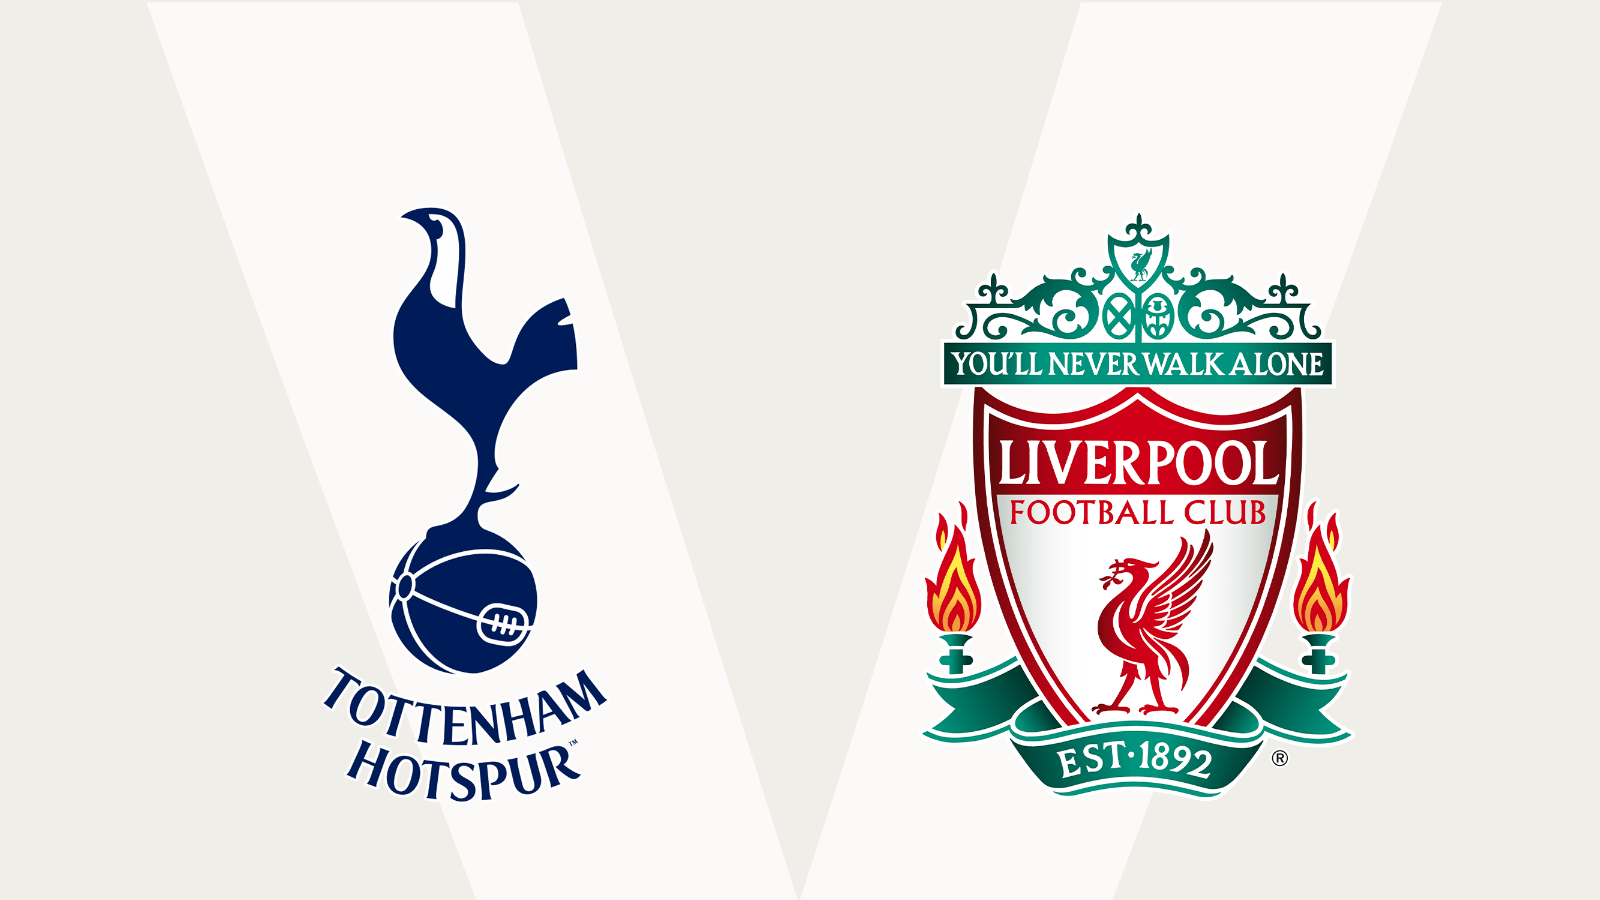 Follow Tottenham v Liverpool live